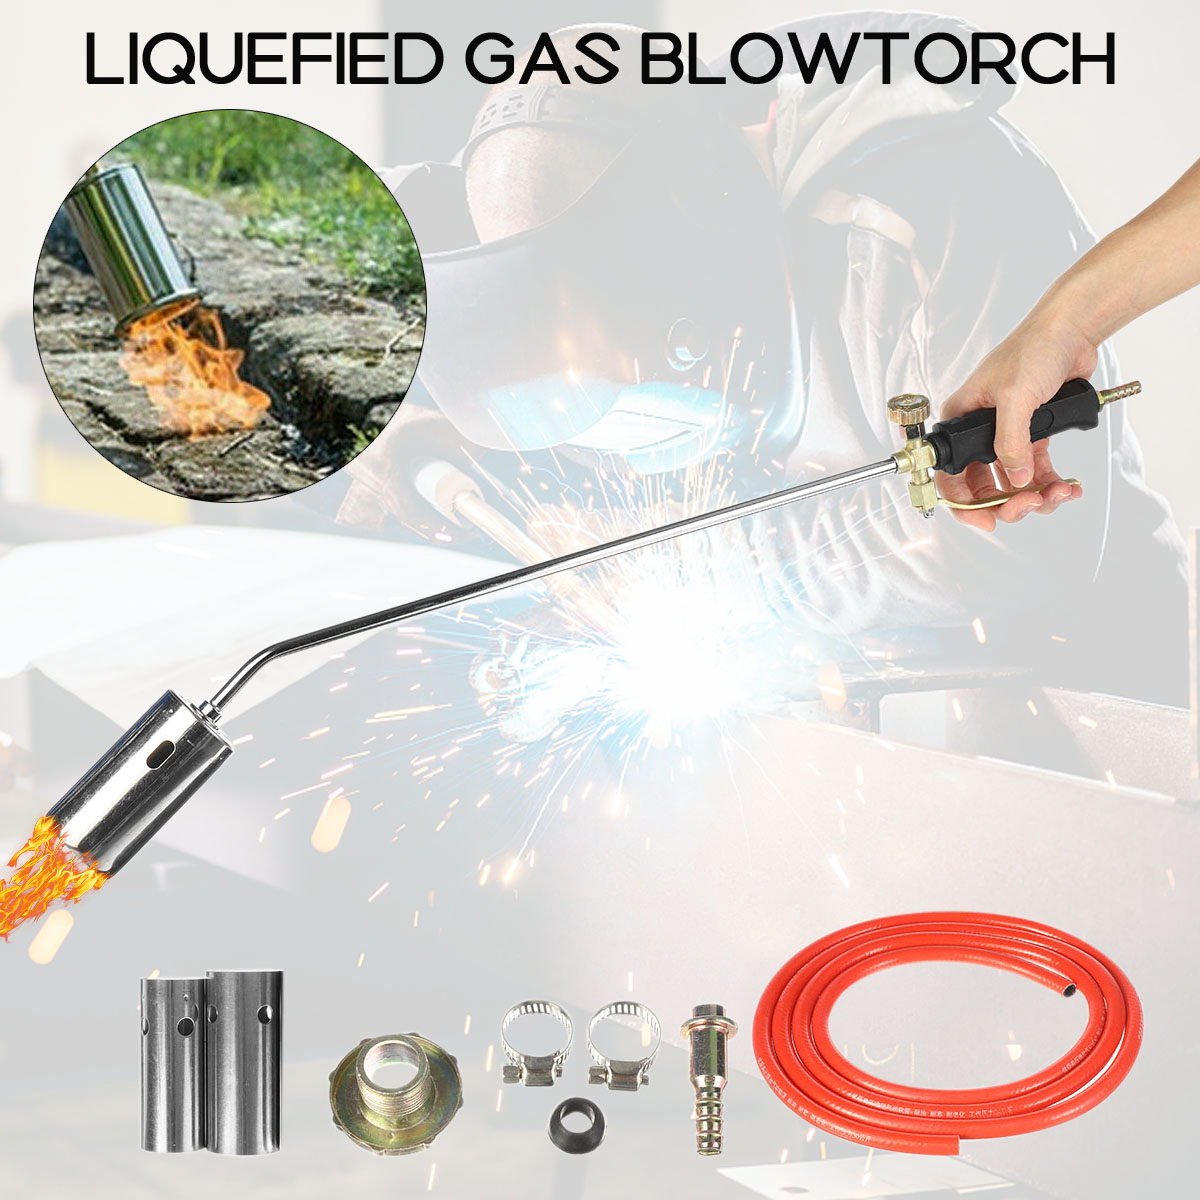 Liquefied Welding Gas torch Fire Gun set Welding Gas Torch Weeds Burner Welding Accessories Heating Torch Propane Butane Gas